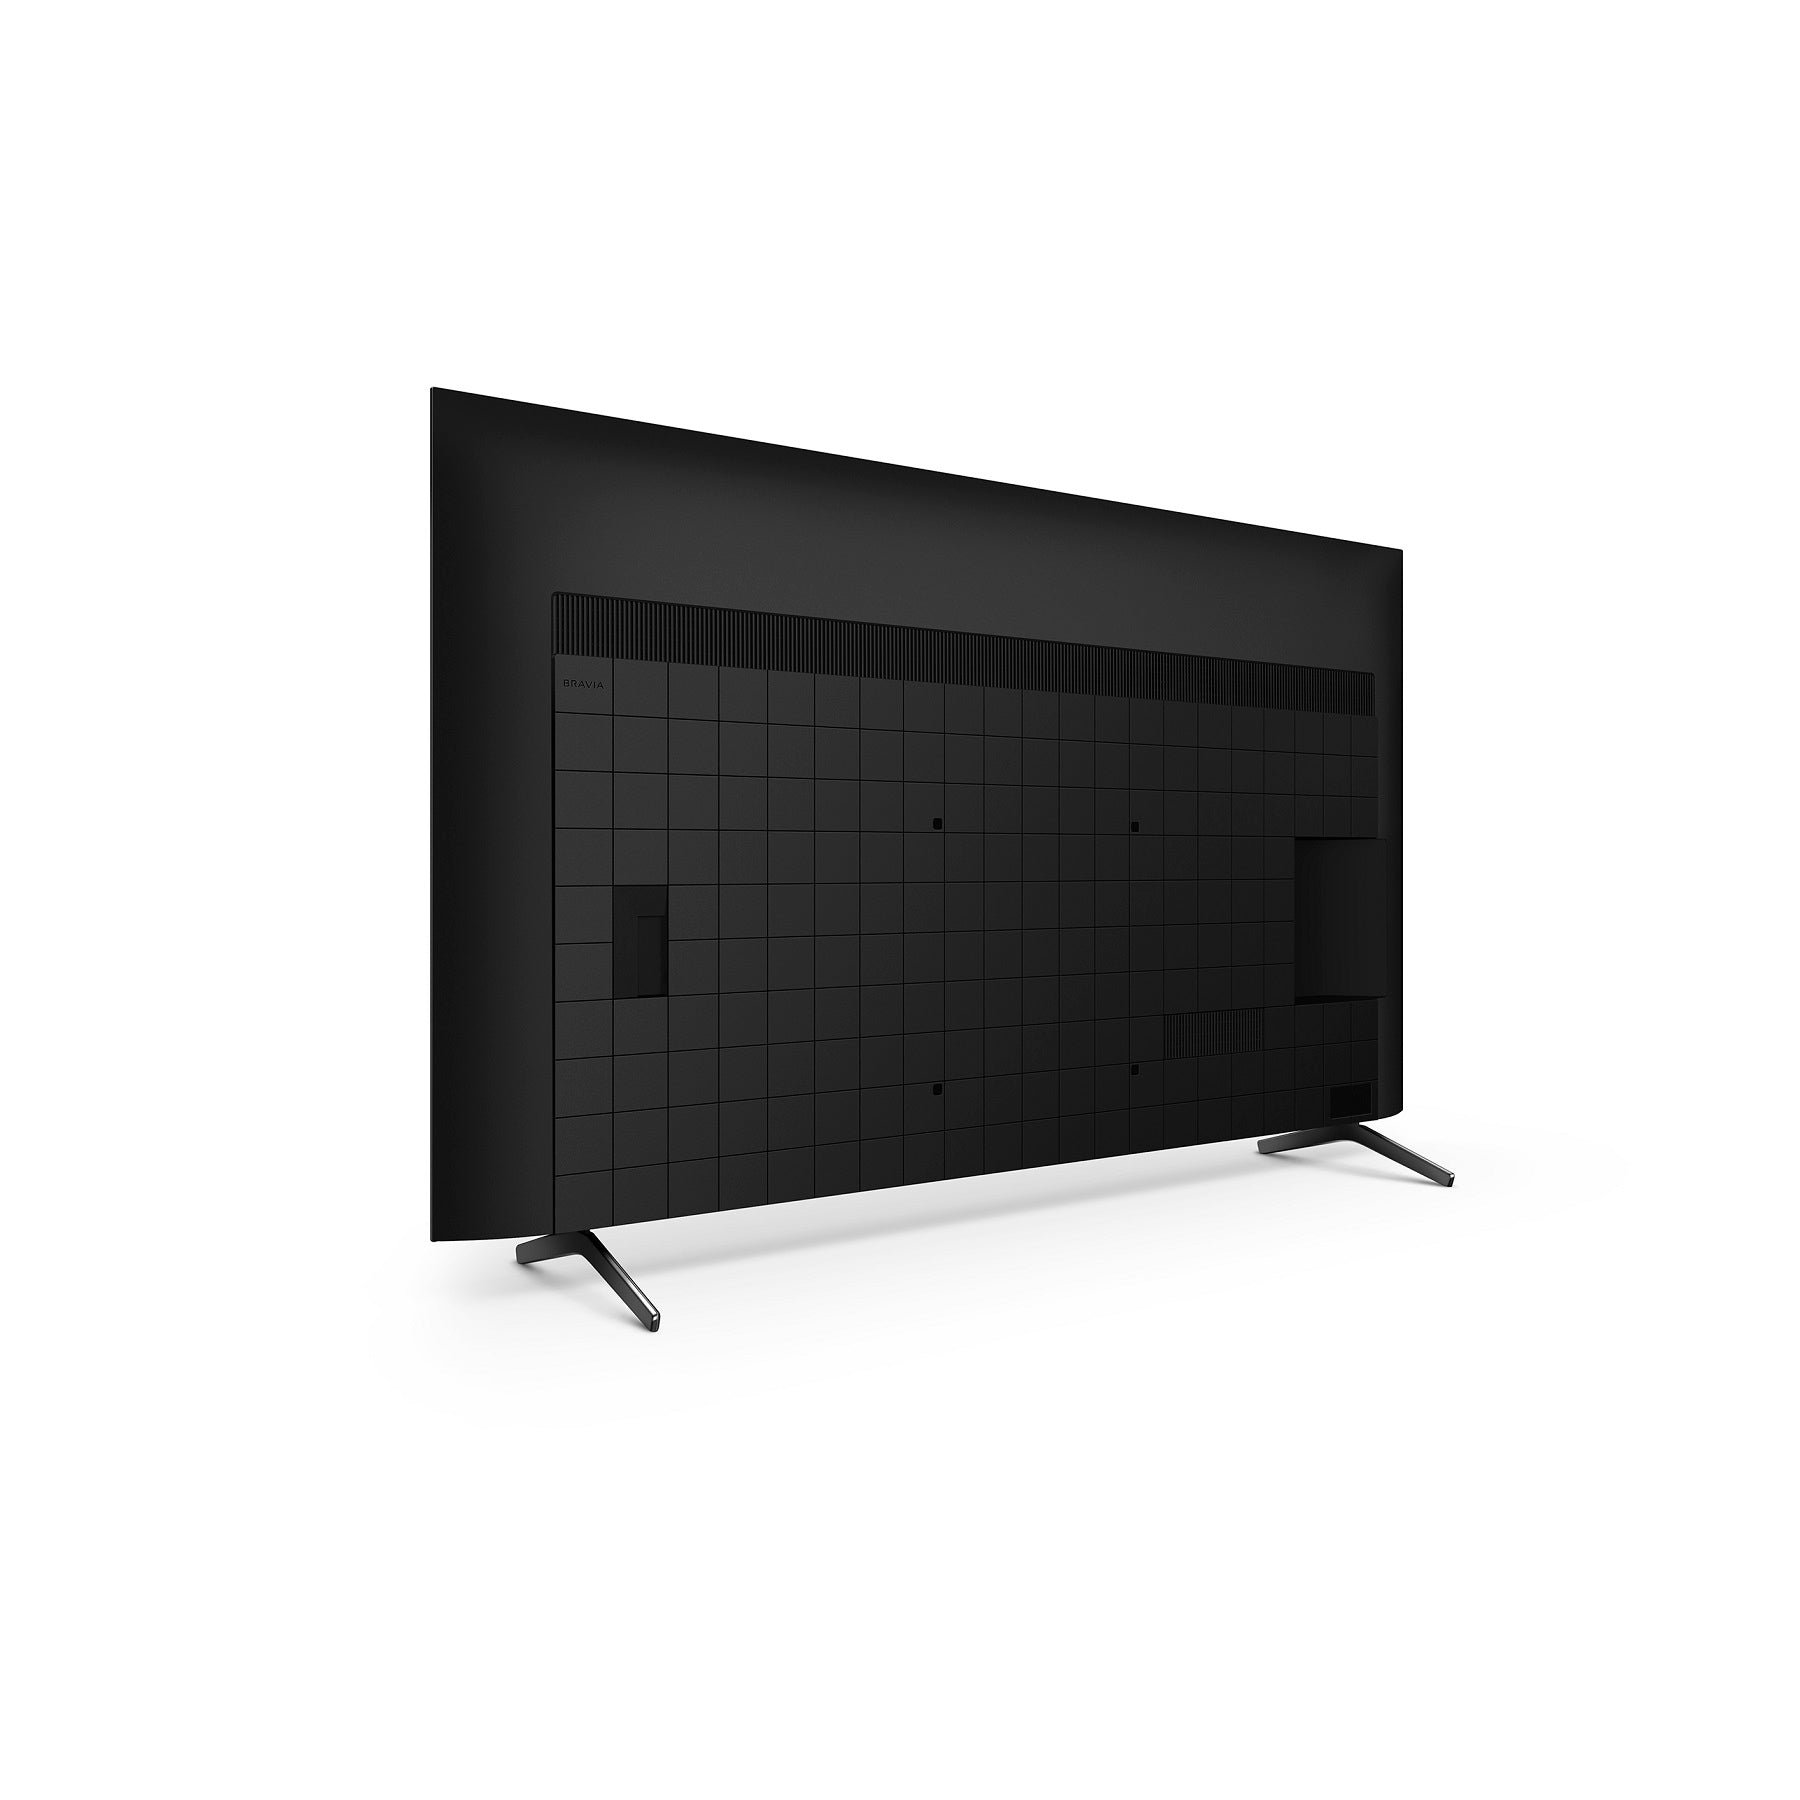 טלוויזיה BRAVIA XR 85 אינץ | DIRECT LED | 4K Ultra HD | Google TV | X85K